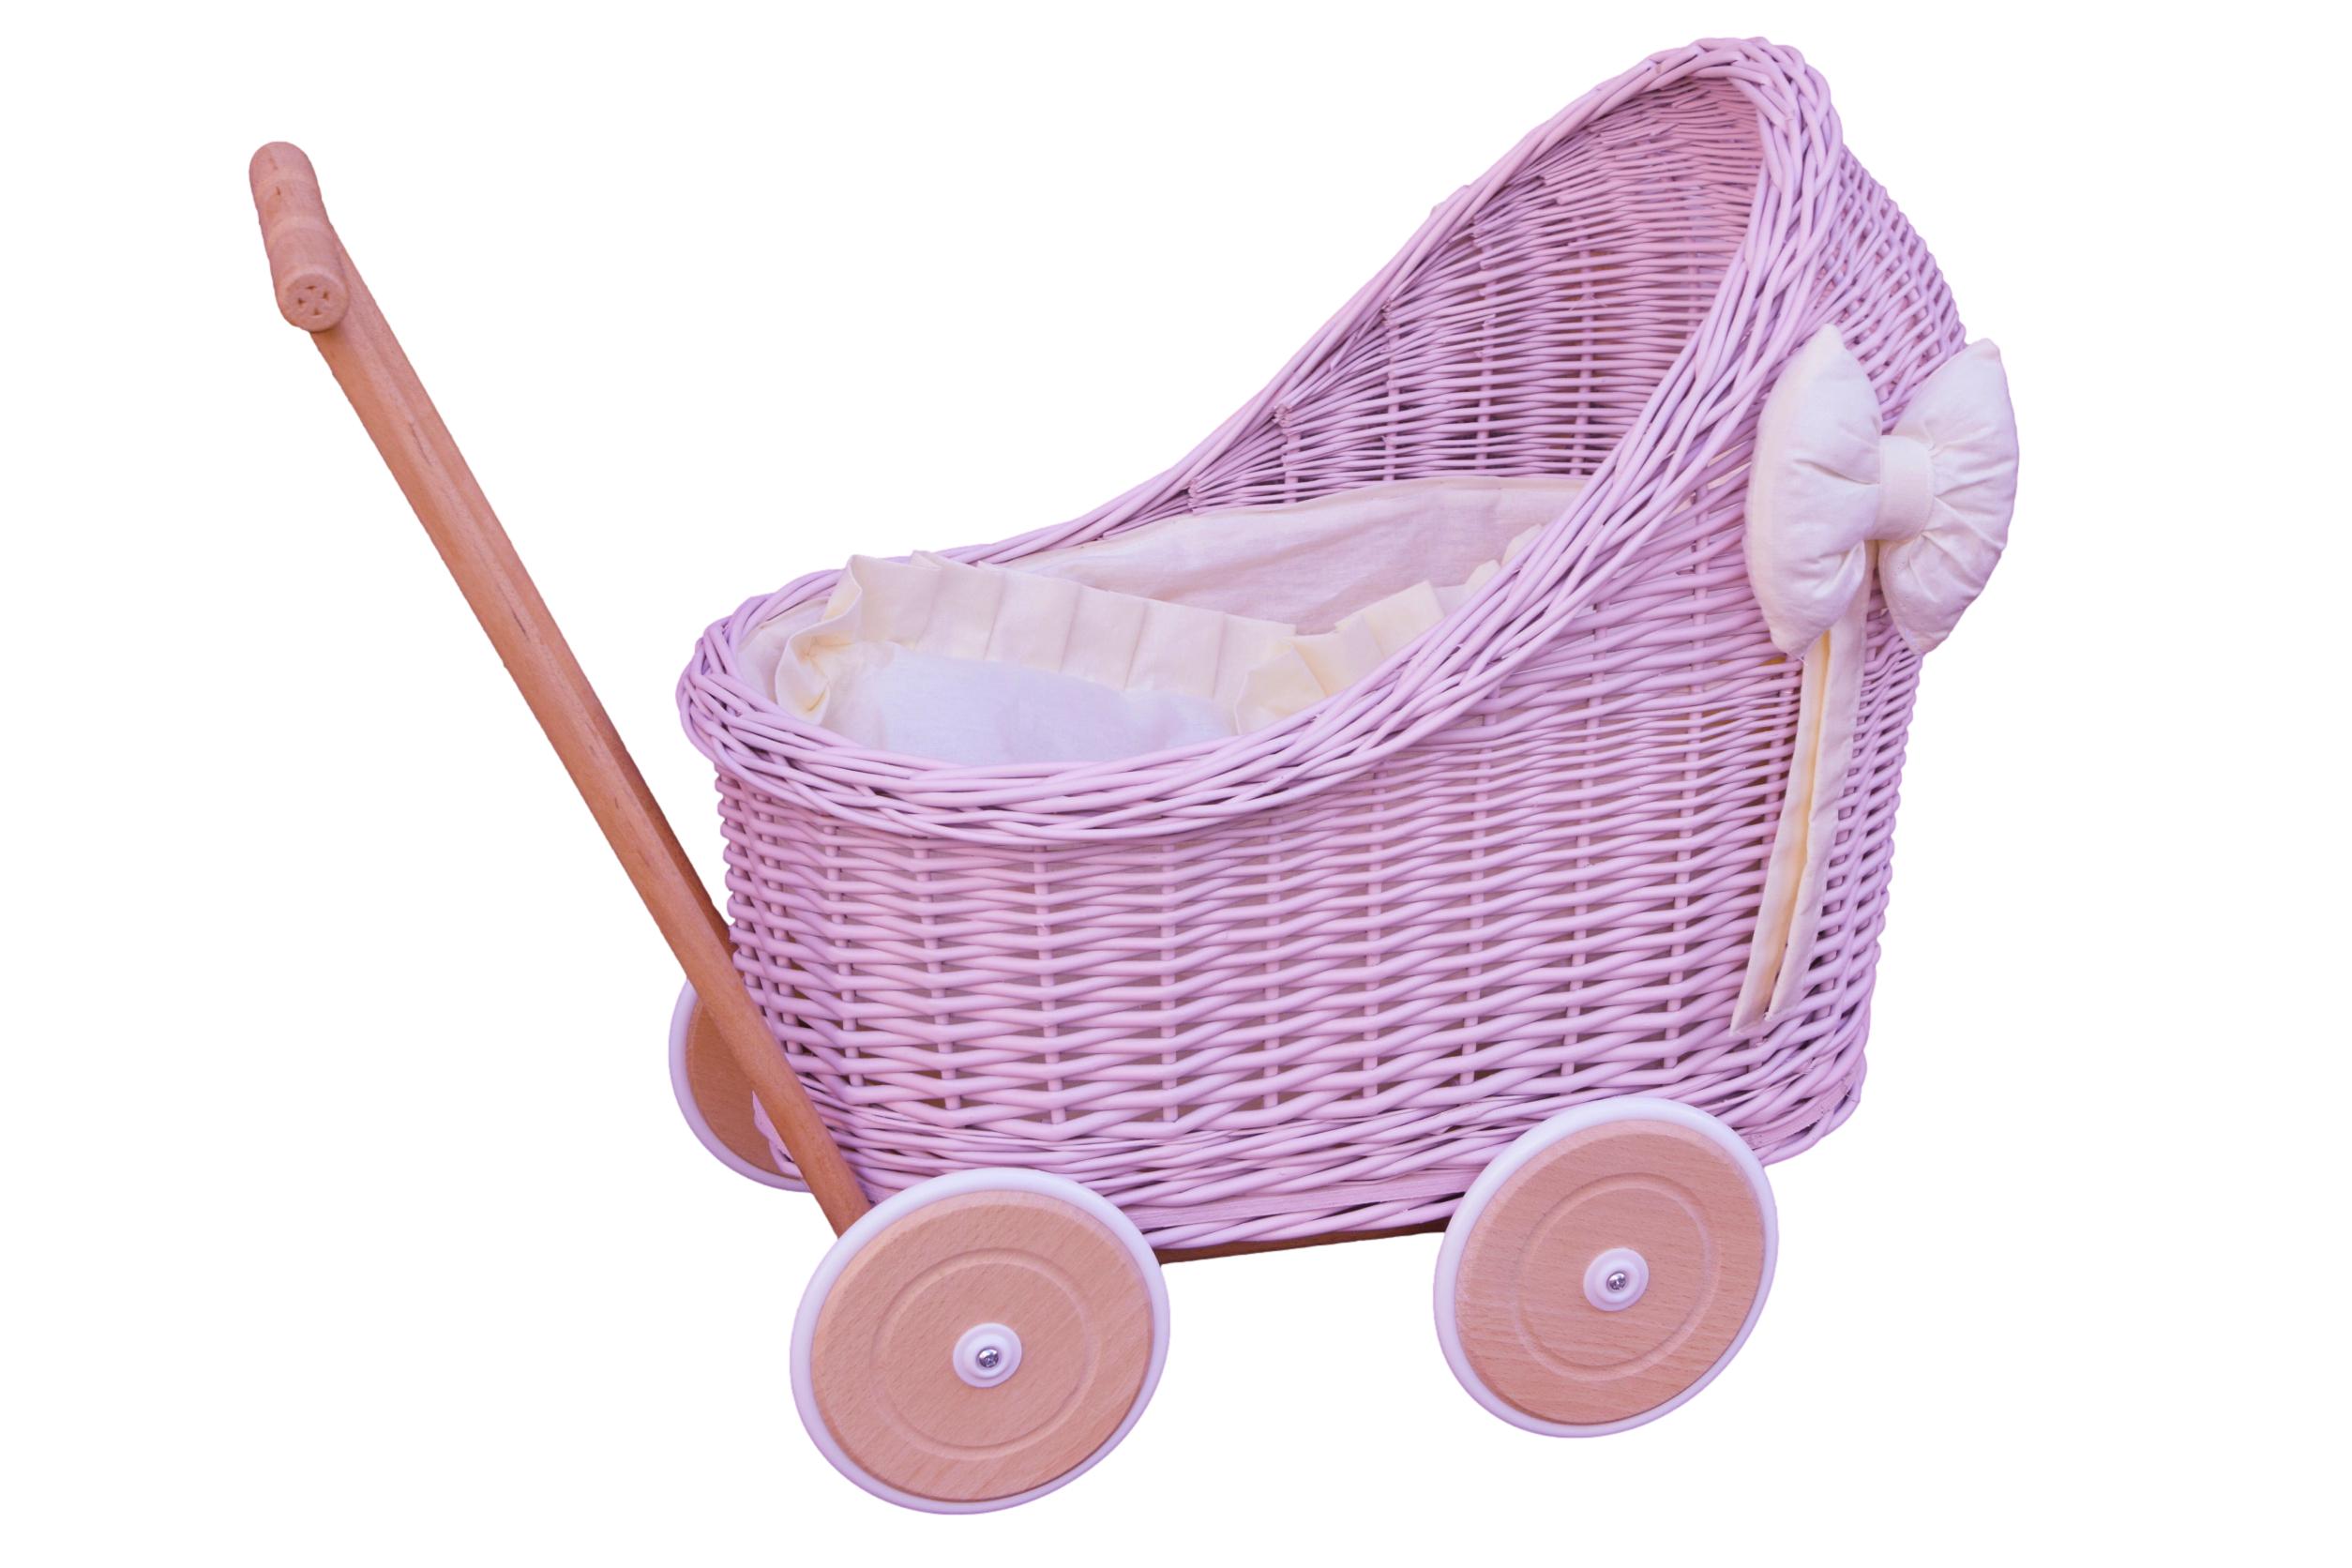 Wiklinowy wózek dla lalek w kolorze pudrowego różu z pościelą ecru